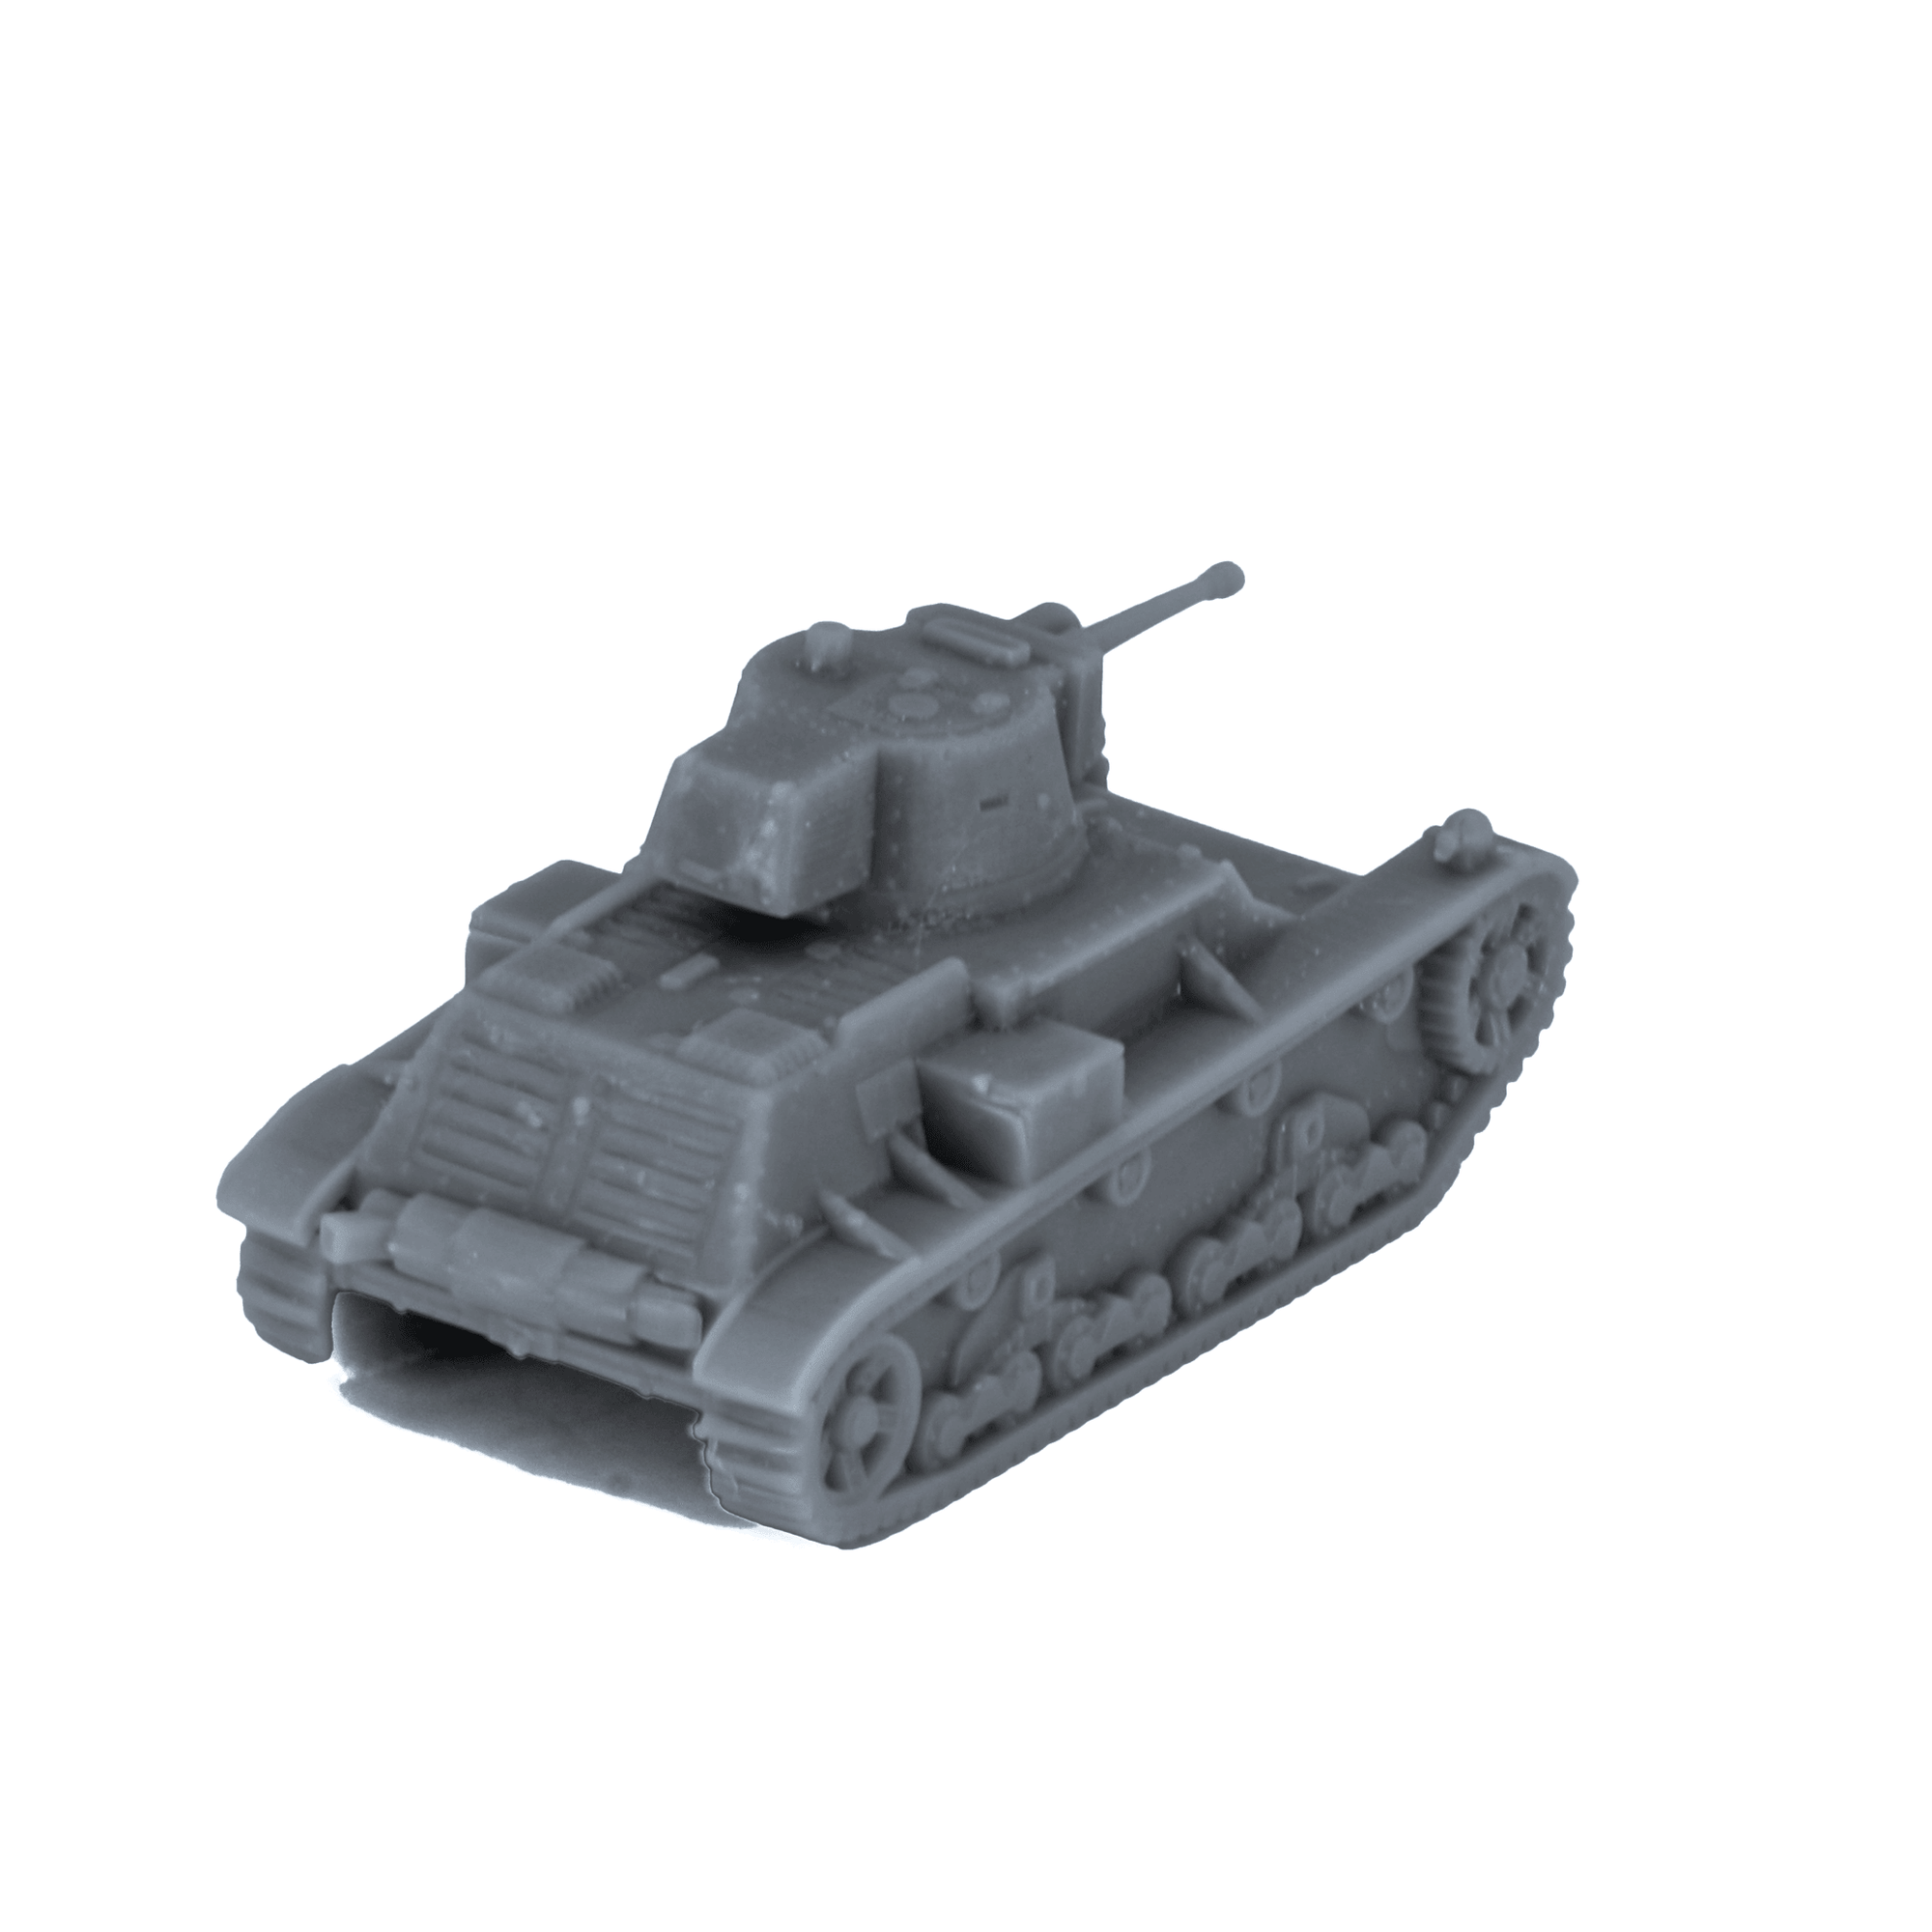 7TPJW Polish Light Tank - Alternate Ending Games